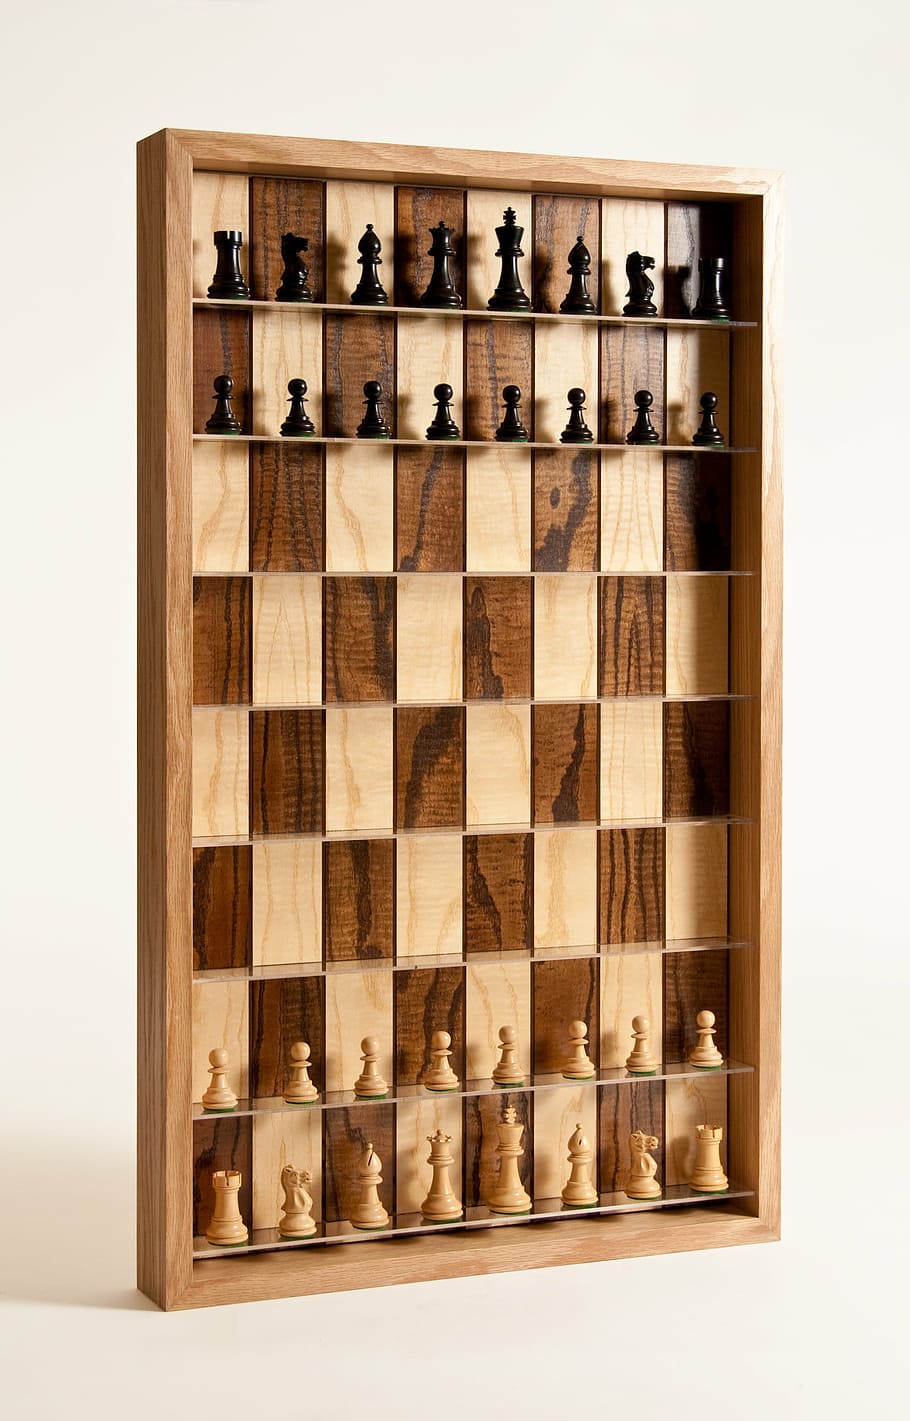 xadrez, tabuleiro de xadrez vertical, xadrez 3d, jogo, tabuleiro de xadrez, dentro de casa, tiro do estúdio, jogo de tabuleiro, fundo branco, madeira - material